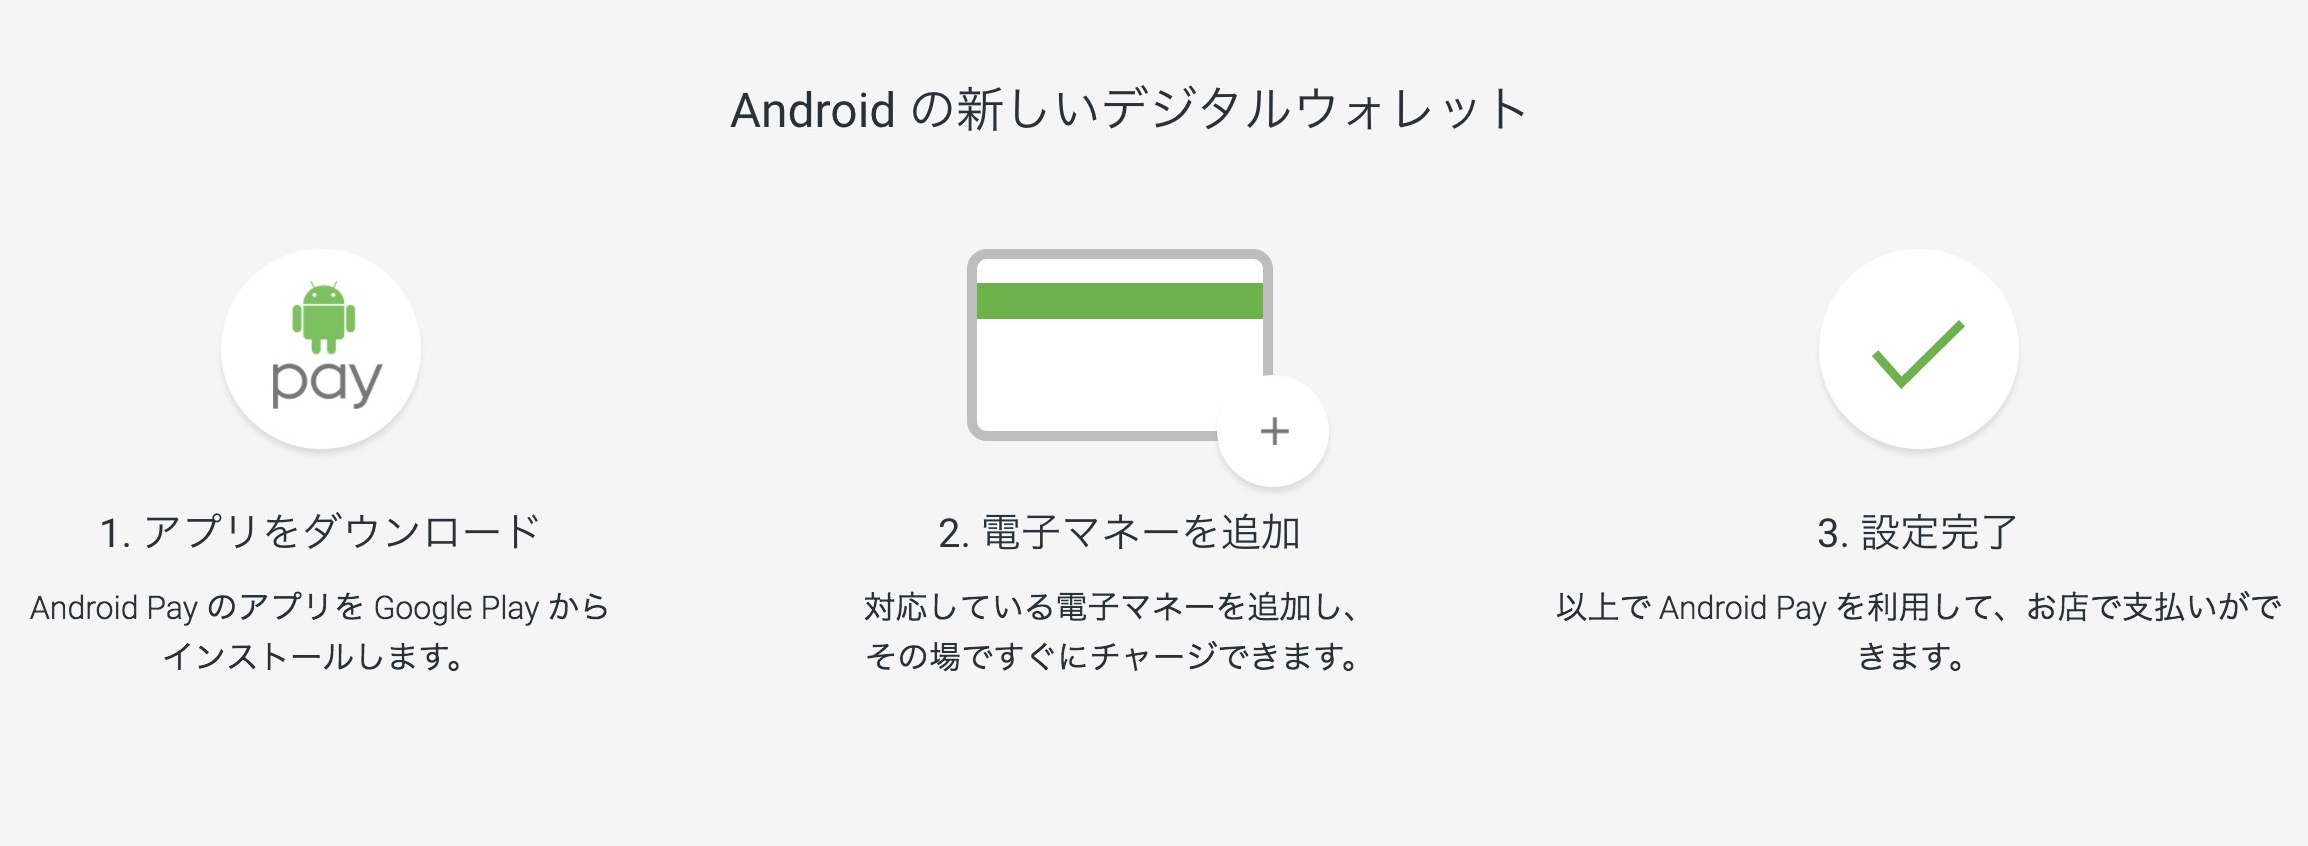 Android Payが日本でサービス開始〜まずは楽天Edyから